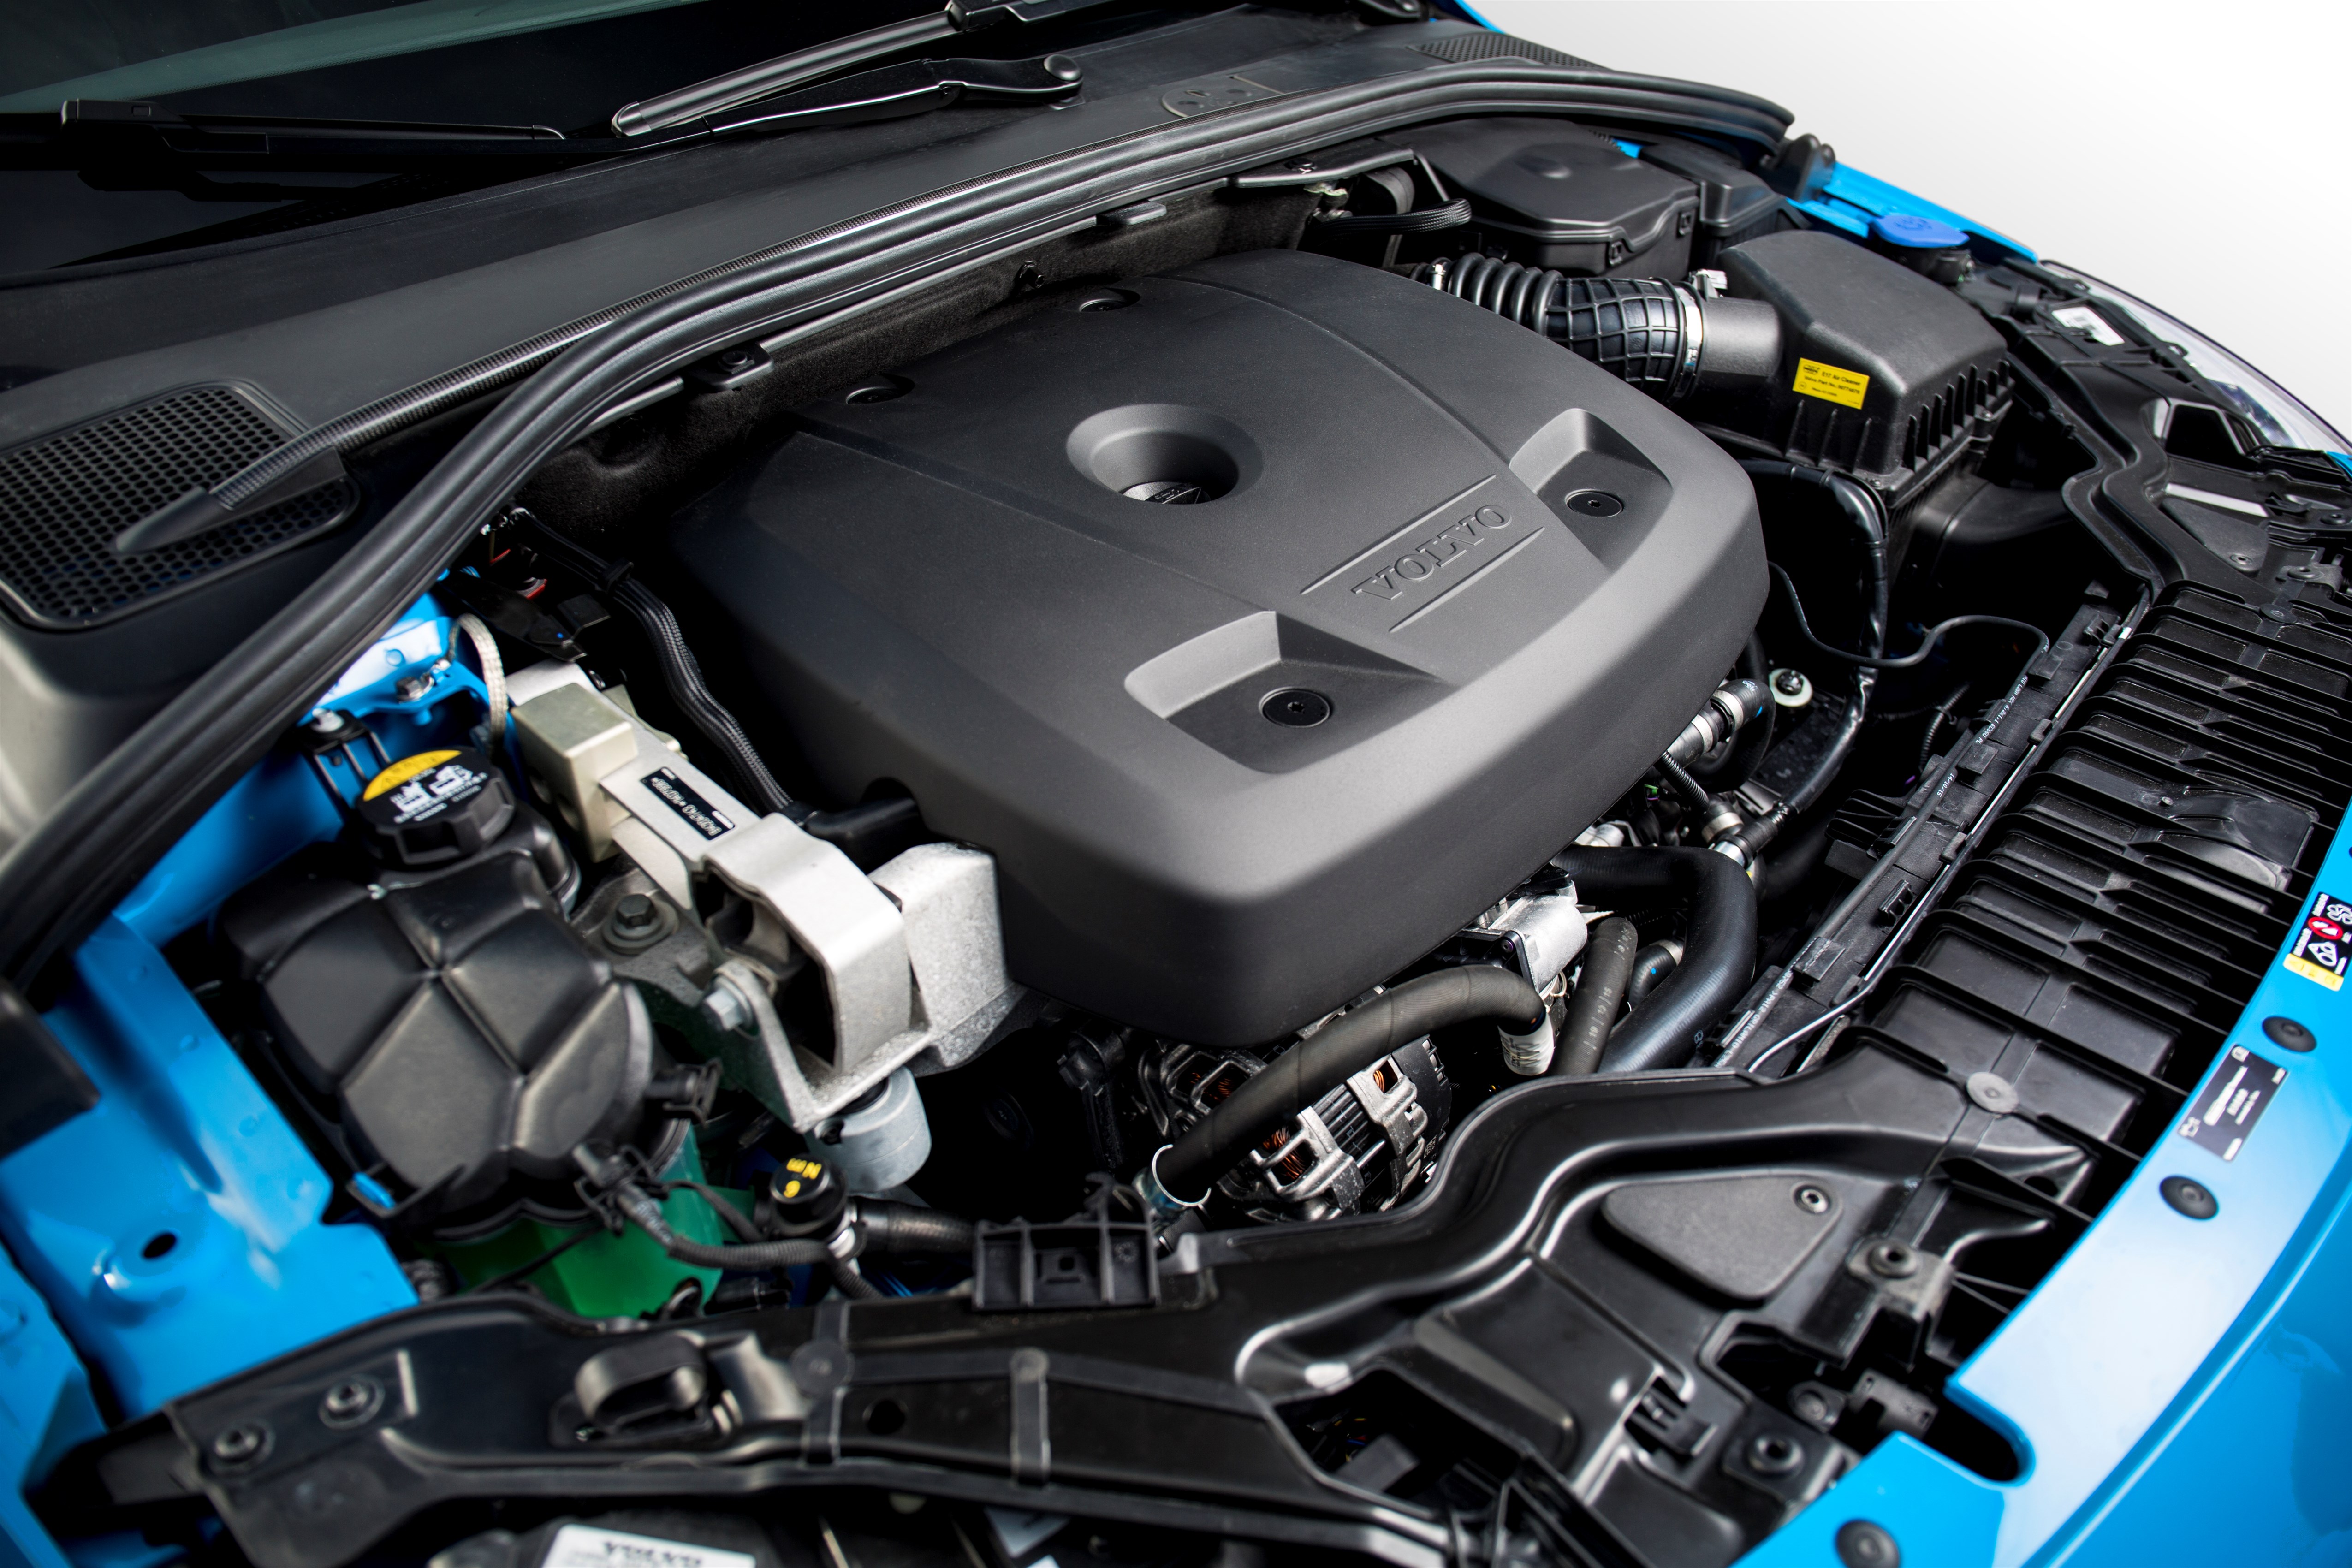 Volvo S60 Polestar engine details